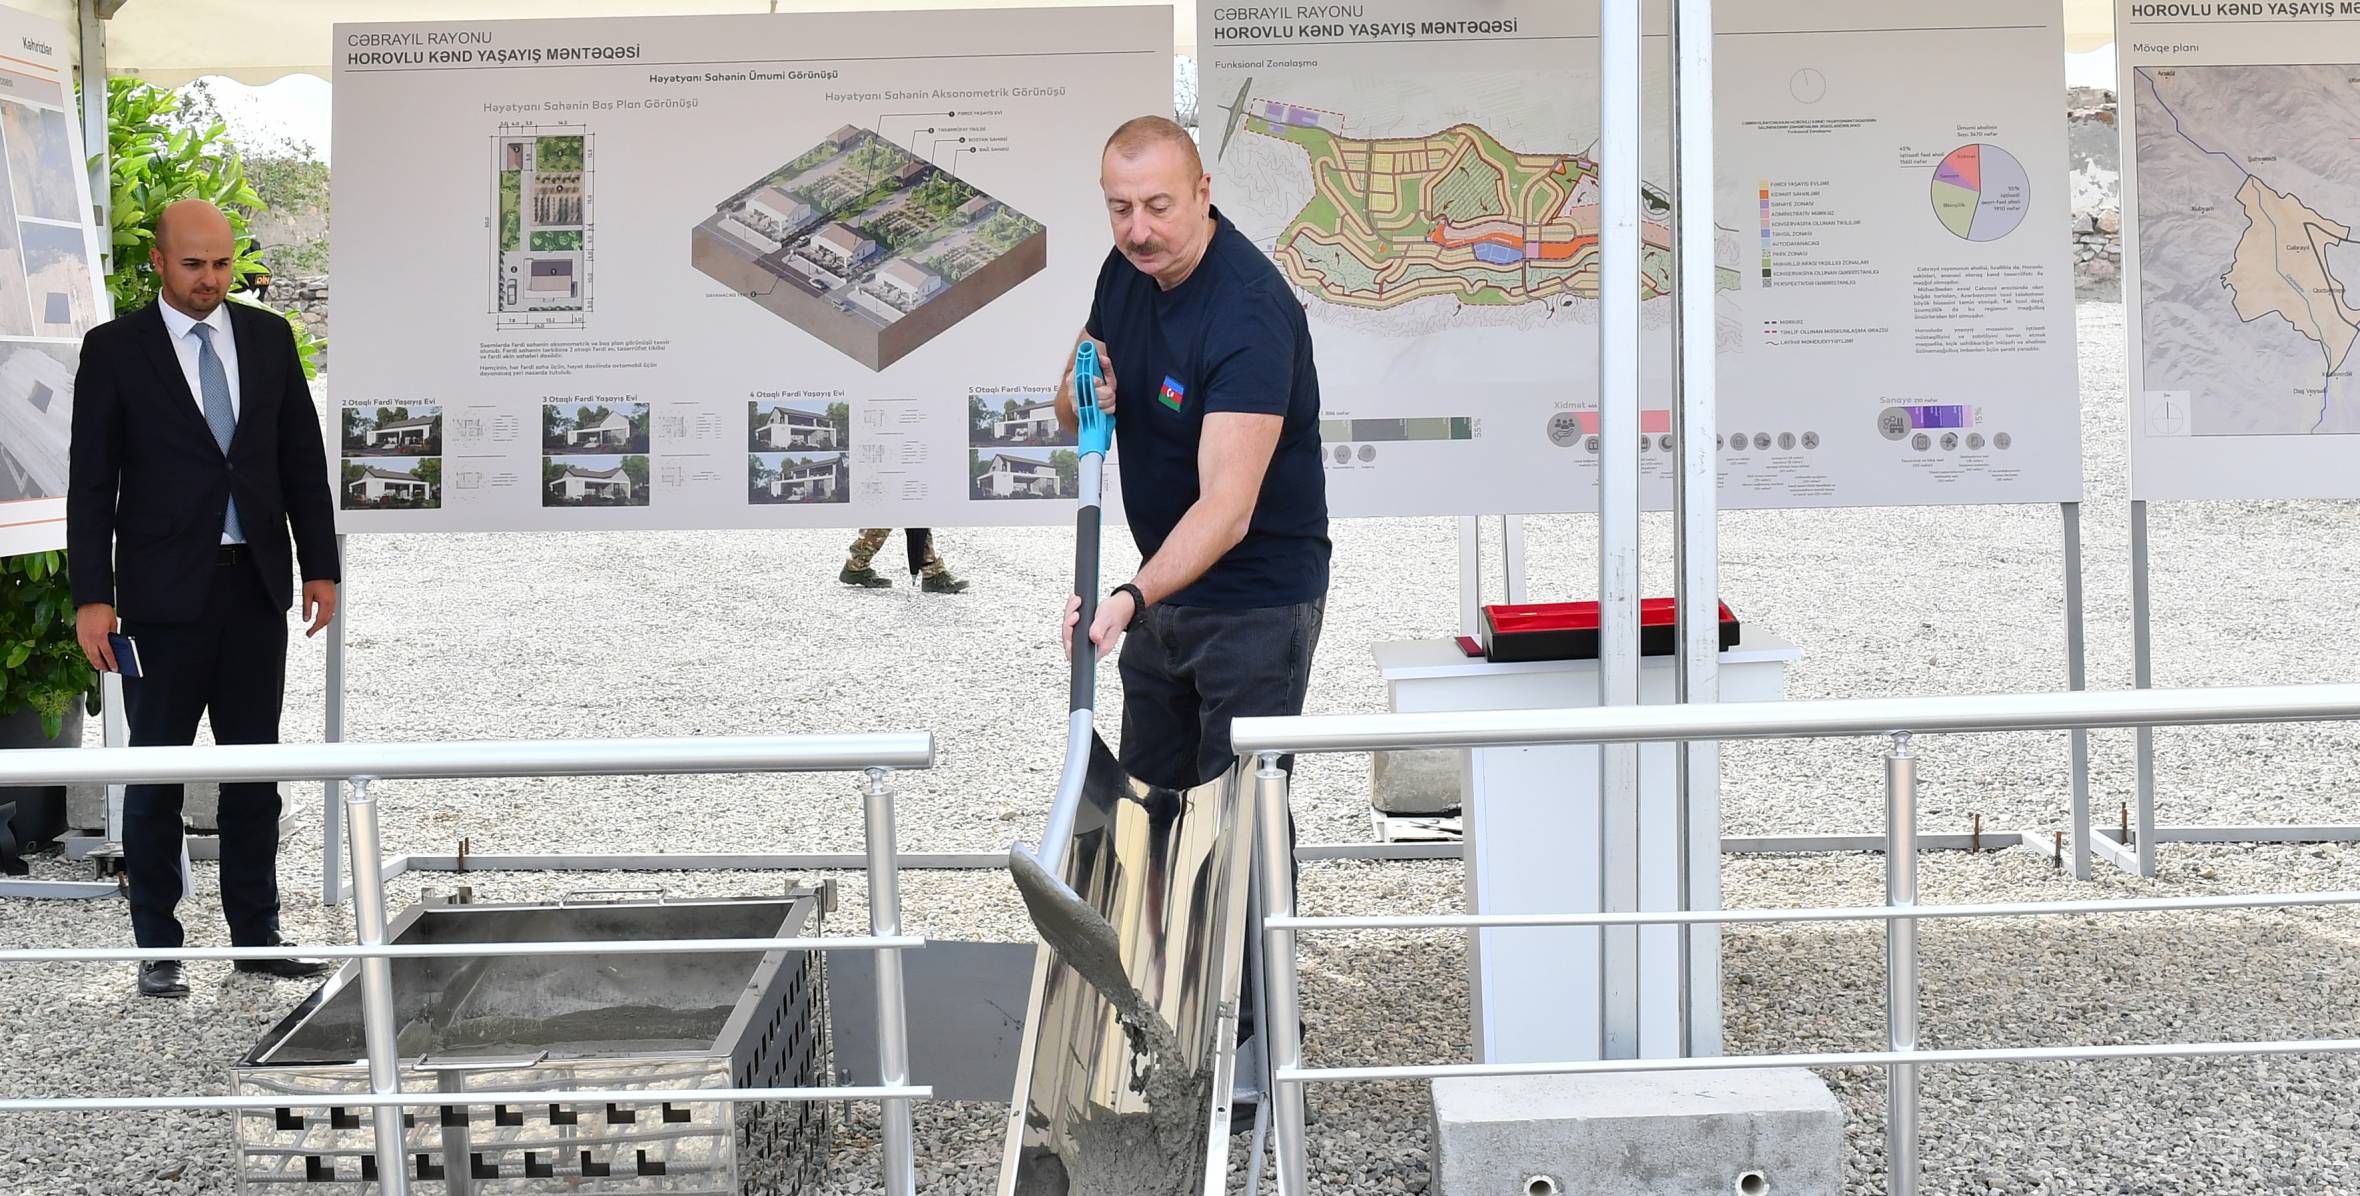 Ilham Aliyev lays foundation for Khorovlu village